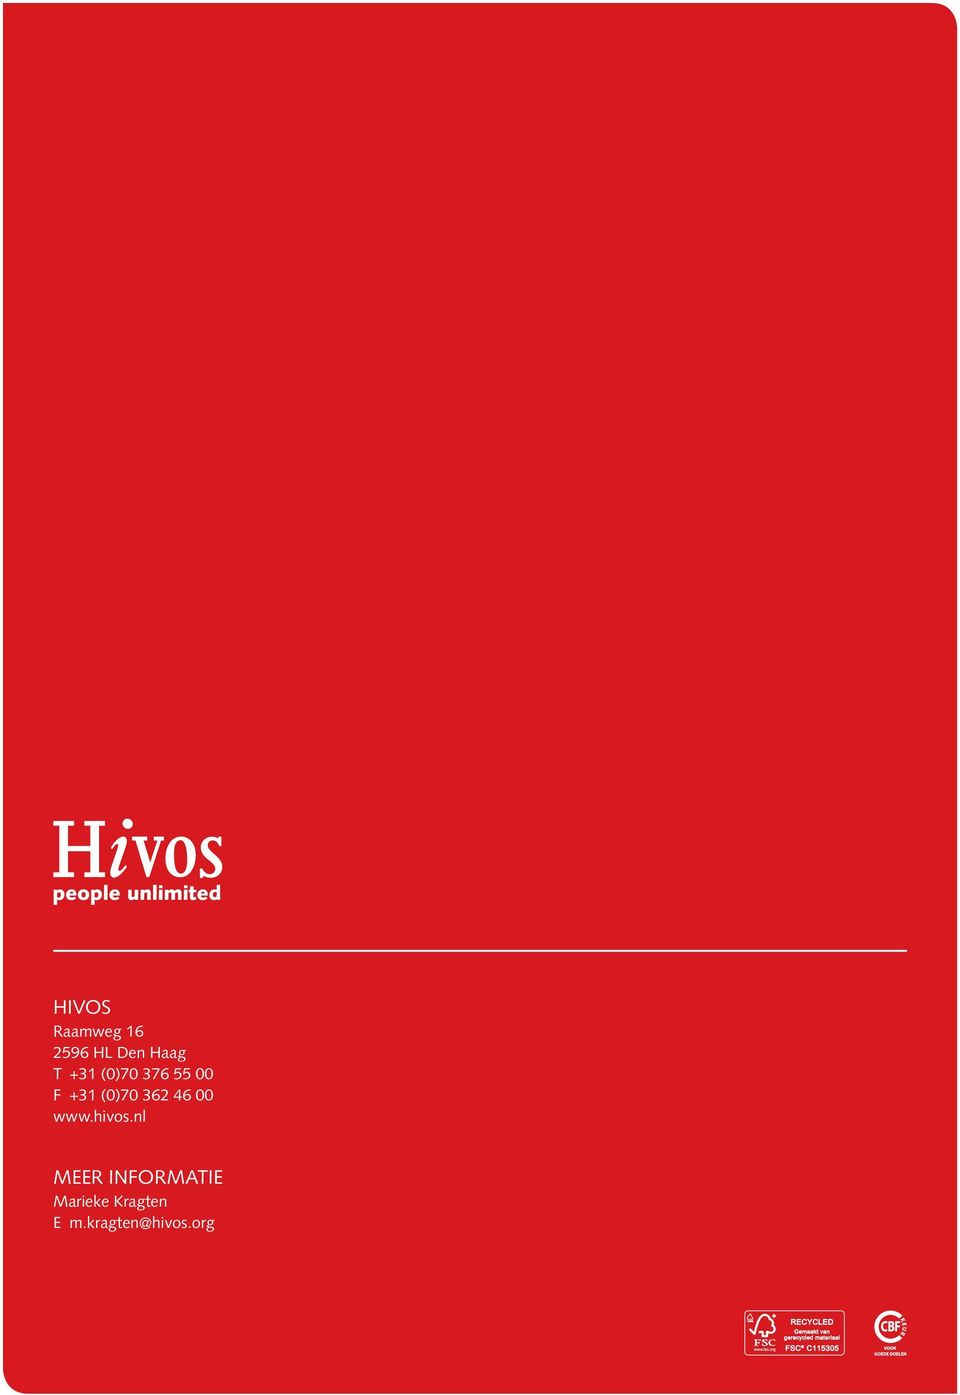 46 00 www.hivos.